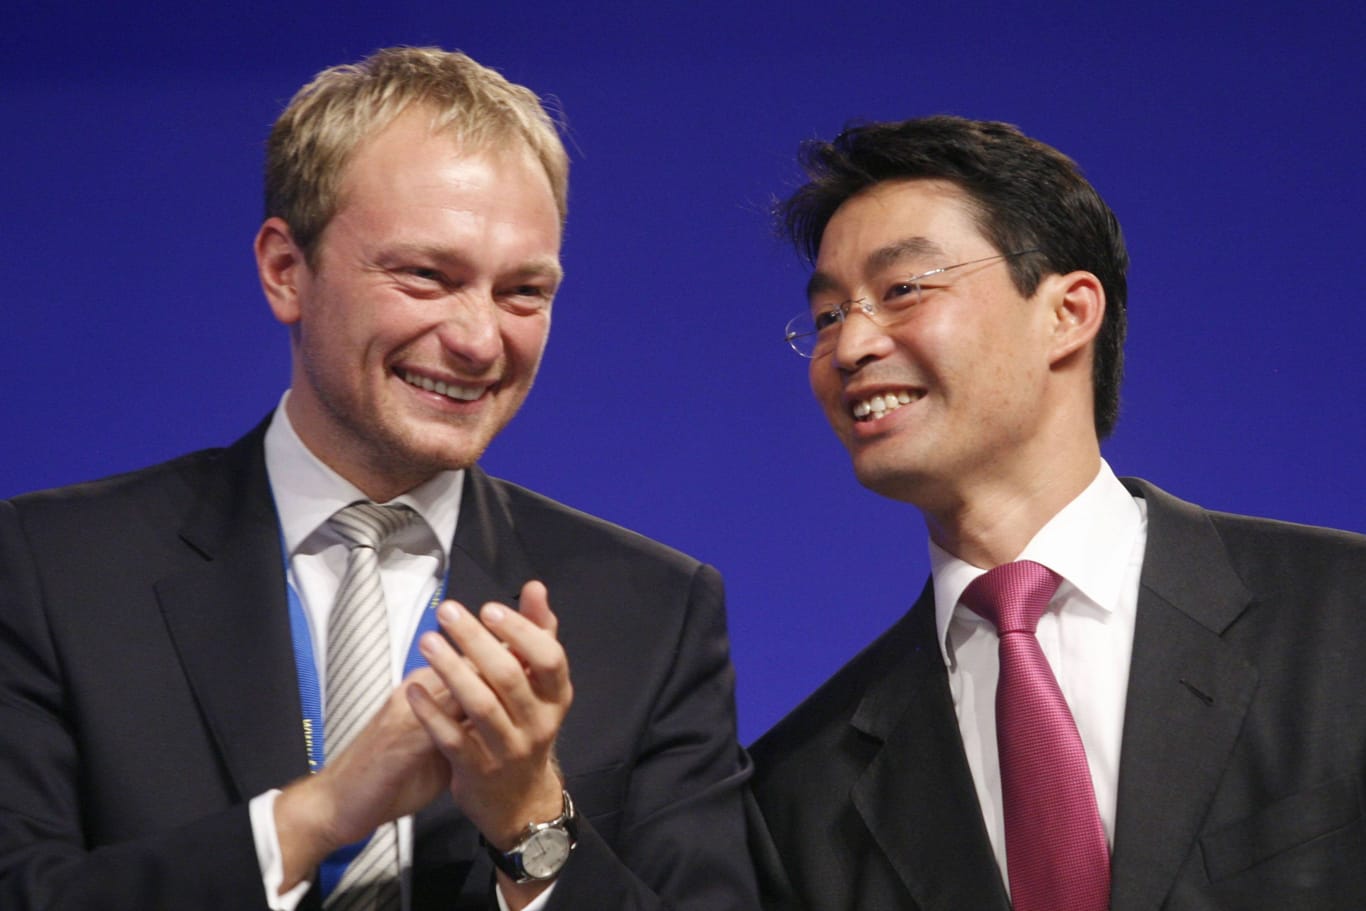 Der damals neu gewählte FDP-Chef Philipp Rösler (rechts) mit FDP-Generalsekretär Christian Lindner (links) auf dem Parteitag 2011.